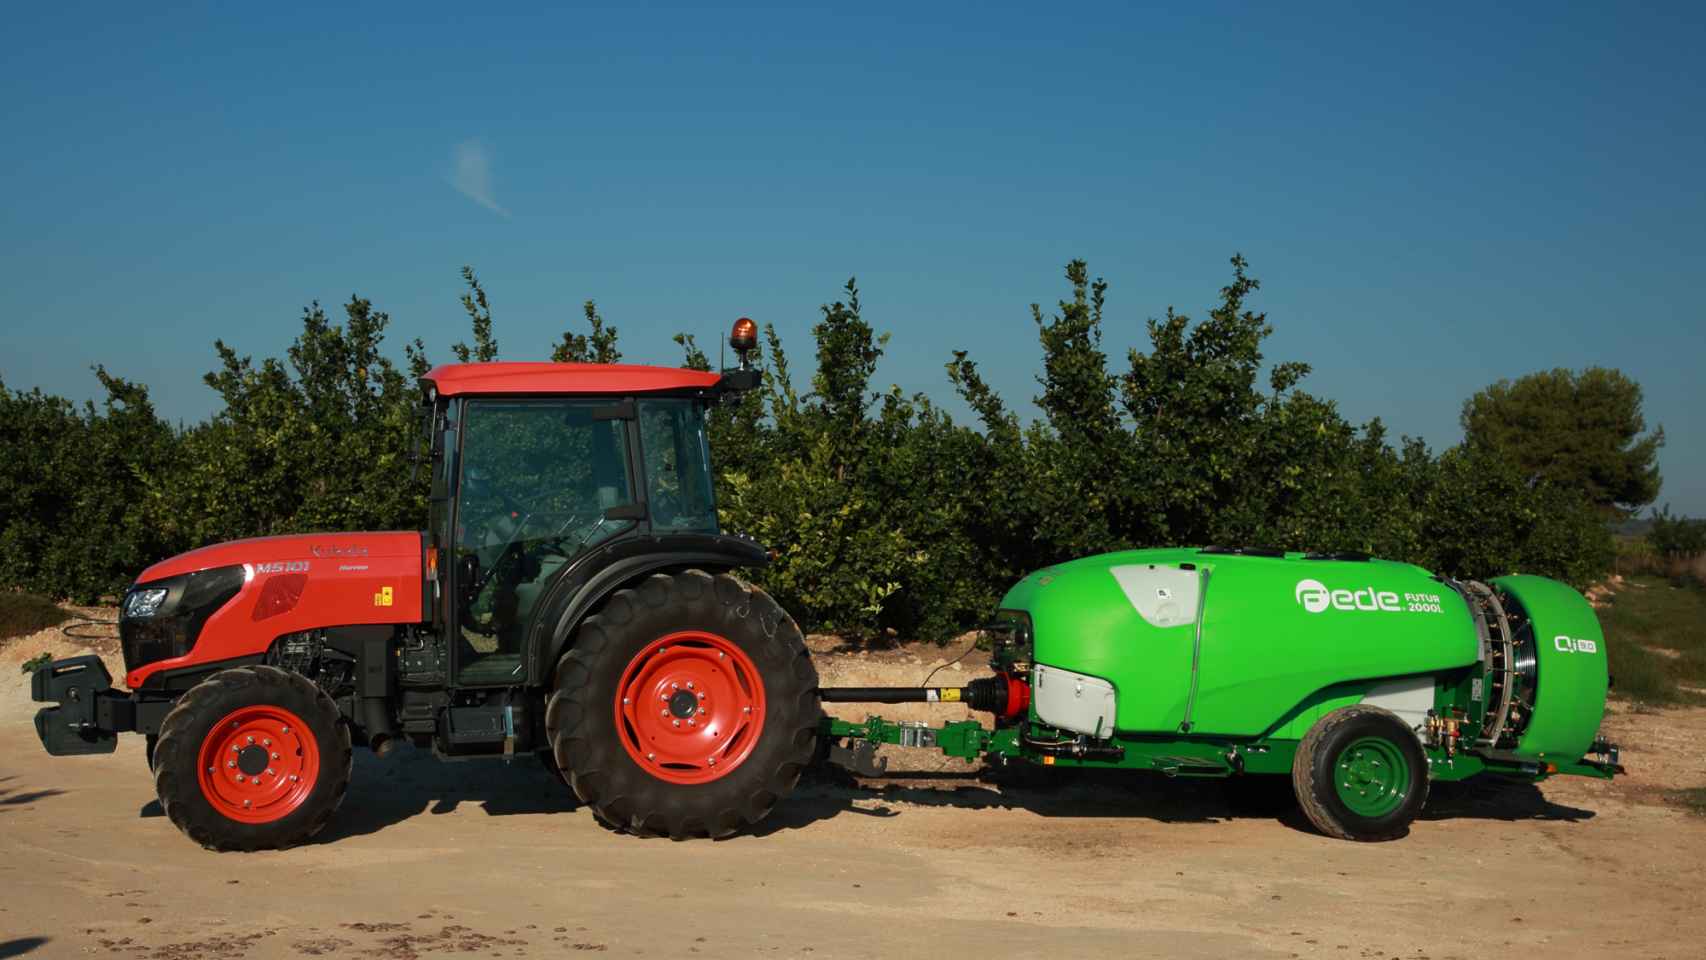 La transformación digital de la maquinaria agrícola da un salto cualitativo con la alianza de Pulverizadores Fede y Grupo Kubota.